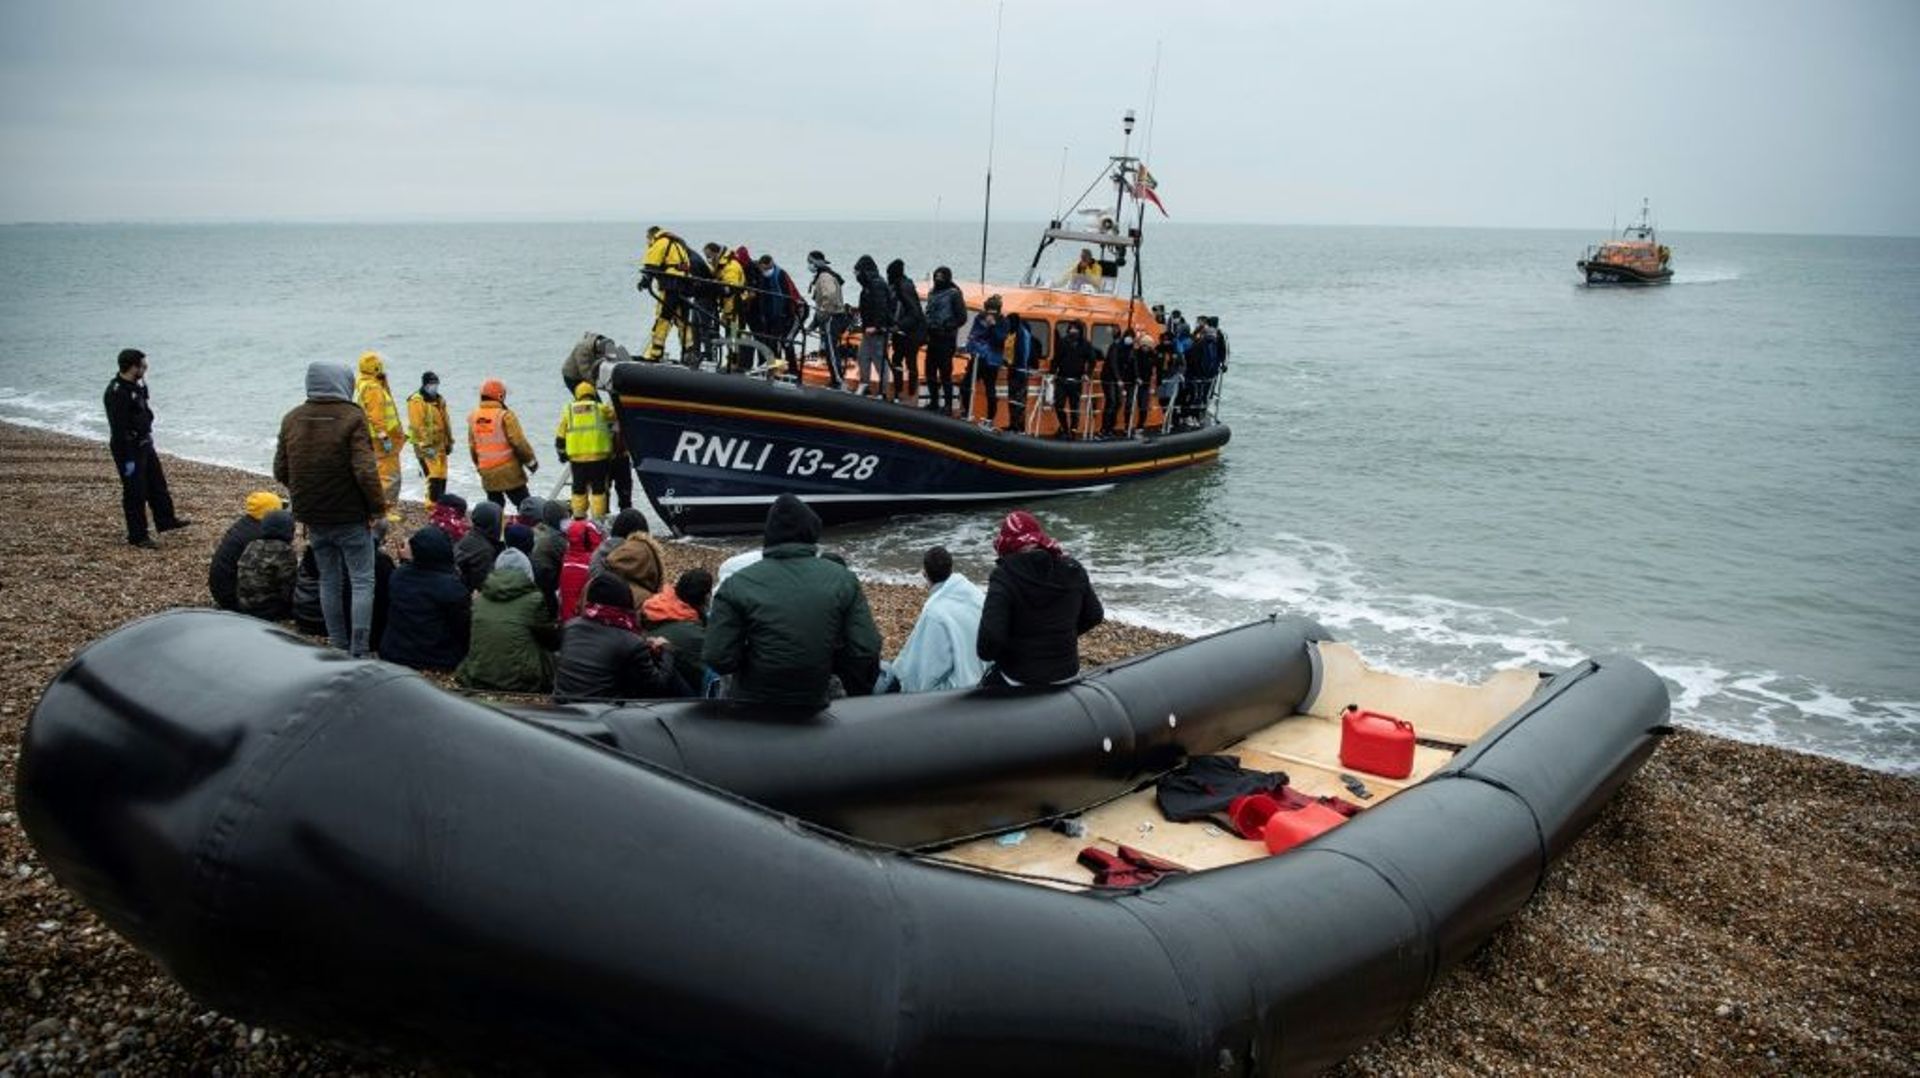 Des migrants sur une plage de Dungeness après avoir été secourus en mer par la RNLI pendant leur traversée de La Manche, le 24 novembre 2021 dans le sud-est de l’Angleterre